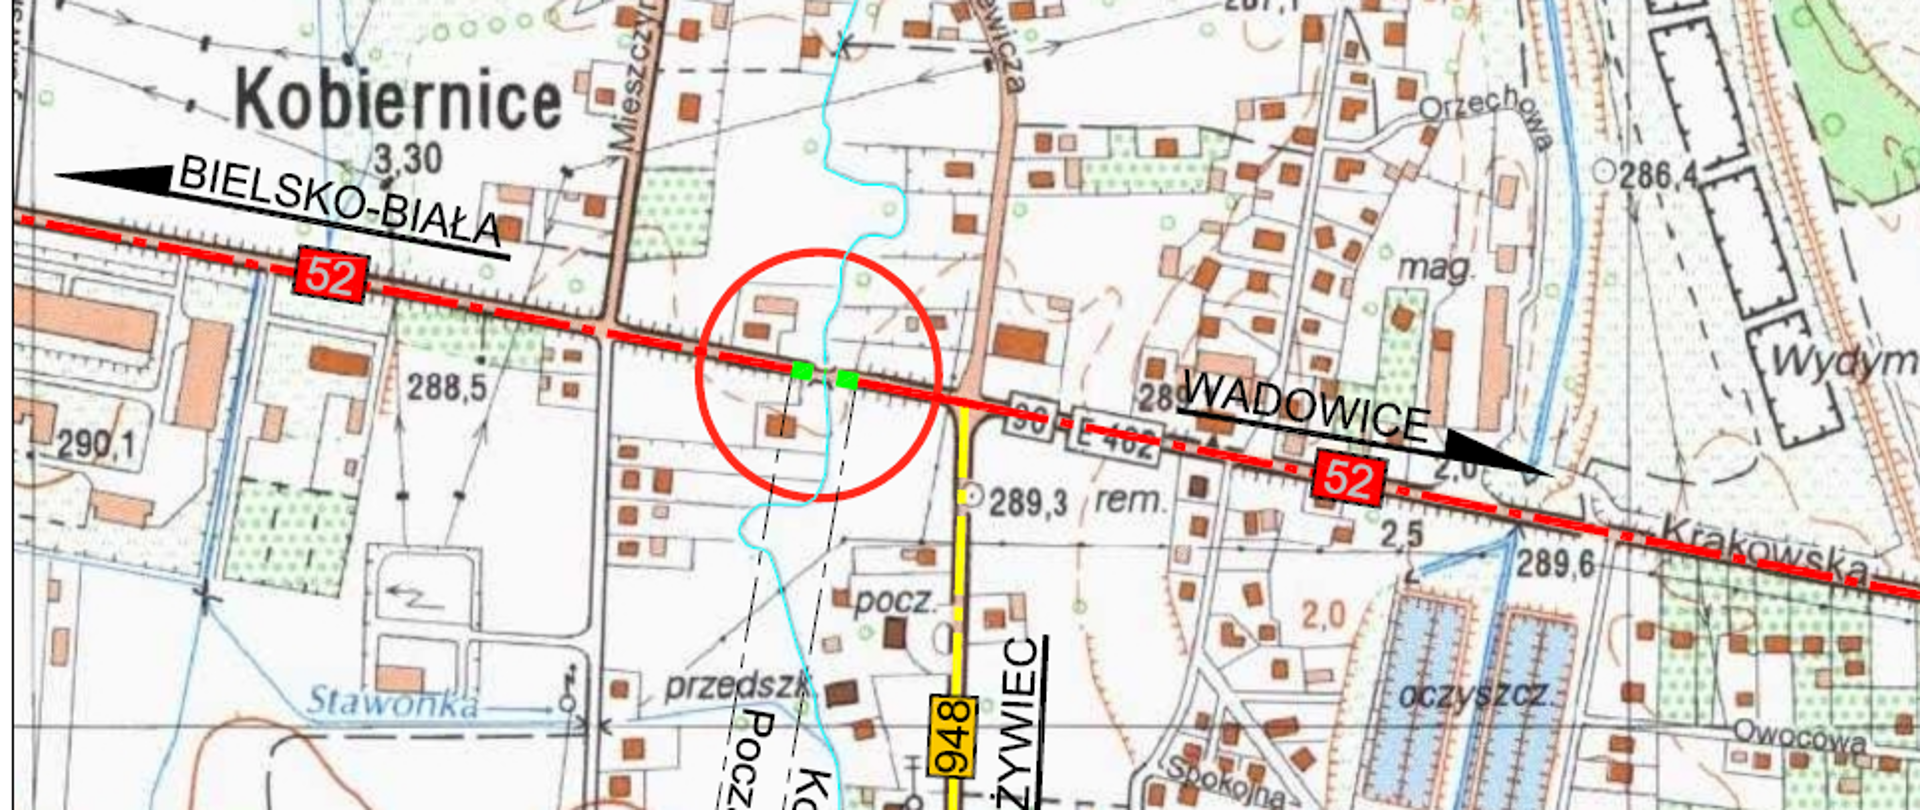 Mapa z naniesioną lokalizacją nowego mostu w ciągu drogi krajowej nr 52 w Kobiernicach. Na mapie widoczna liczna zabudowa indywidulna przecięta siecią dróg. W centralnej części mapy widoczna droga krajowa numer 52 relacji Bielsko-Biała - Wadowice oraz droga wojewódzka numer 948. Nowy most umiejscowiony jest w niedalekiej odległości, po zachodniej stronie skrzyżowania DK52 oraz DW 948. 